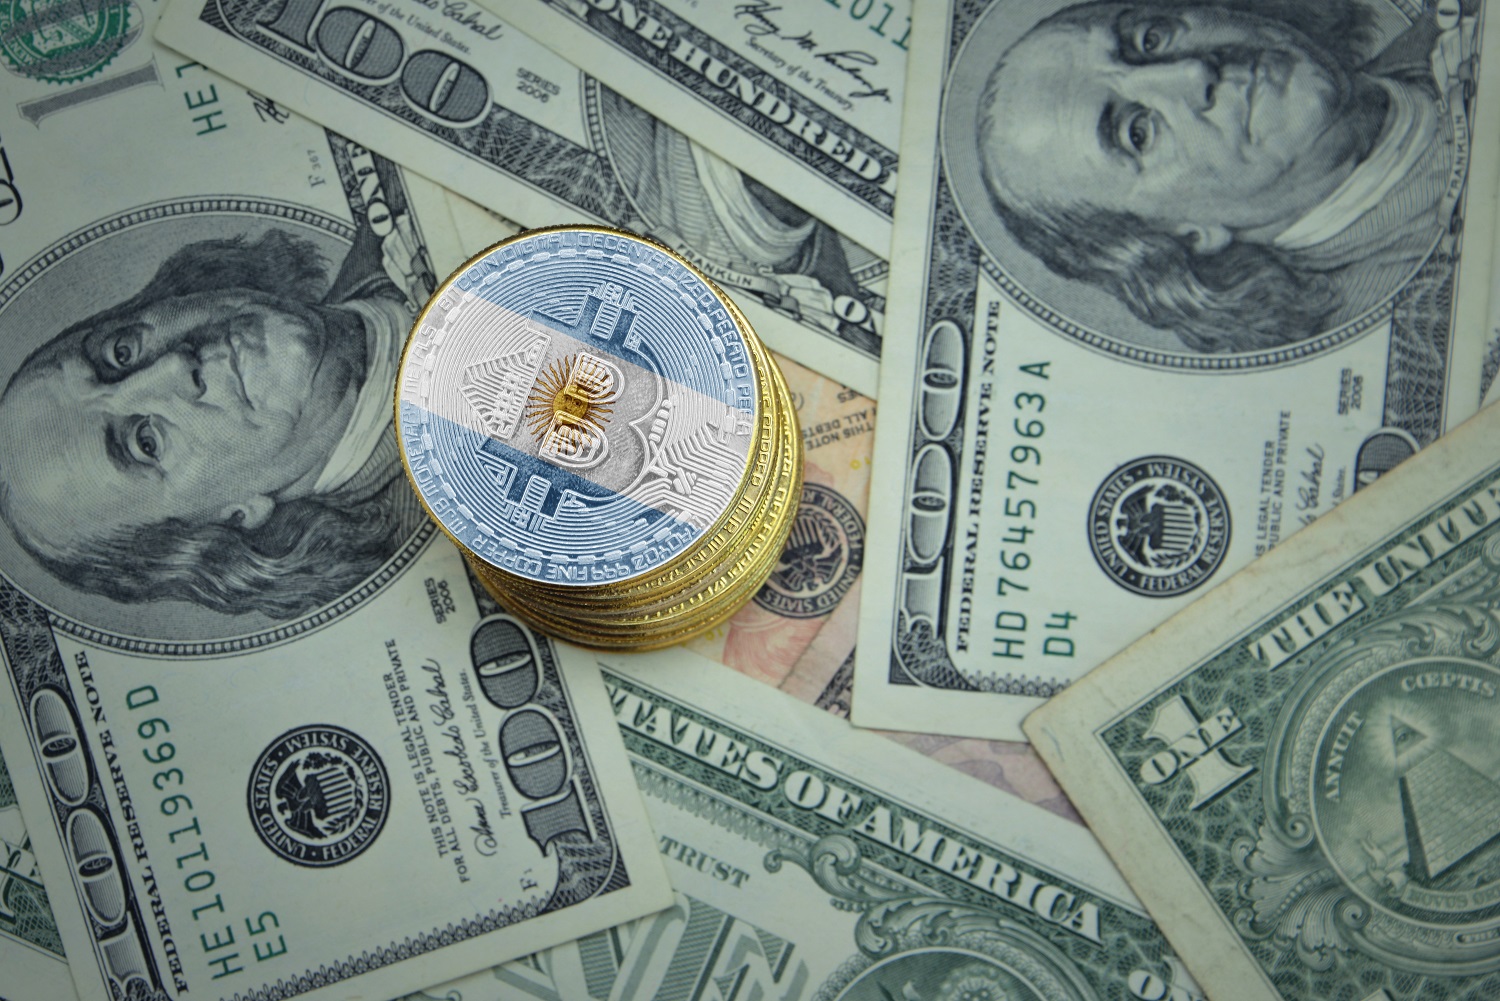 Một chồng thẻ kim loại nhằm đại diện cho Bitcoin được trang trí bằng màu cờ của Argentina nằm rải rác trên các tờ đô la.